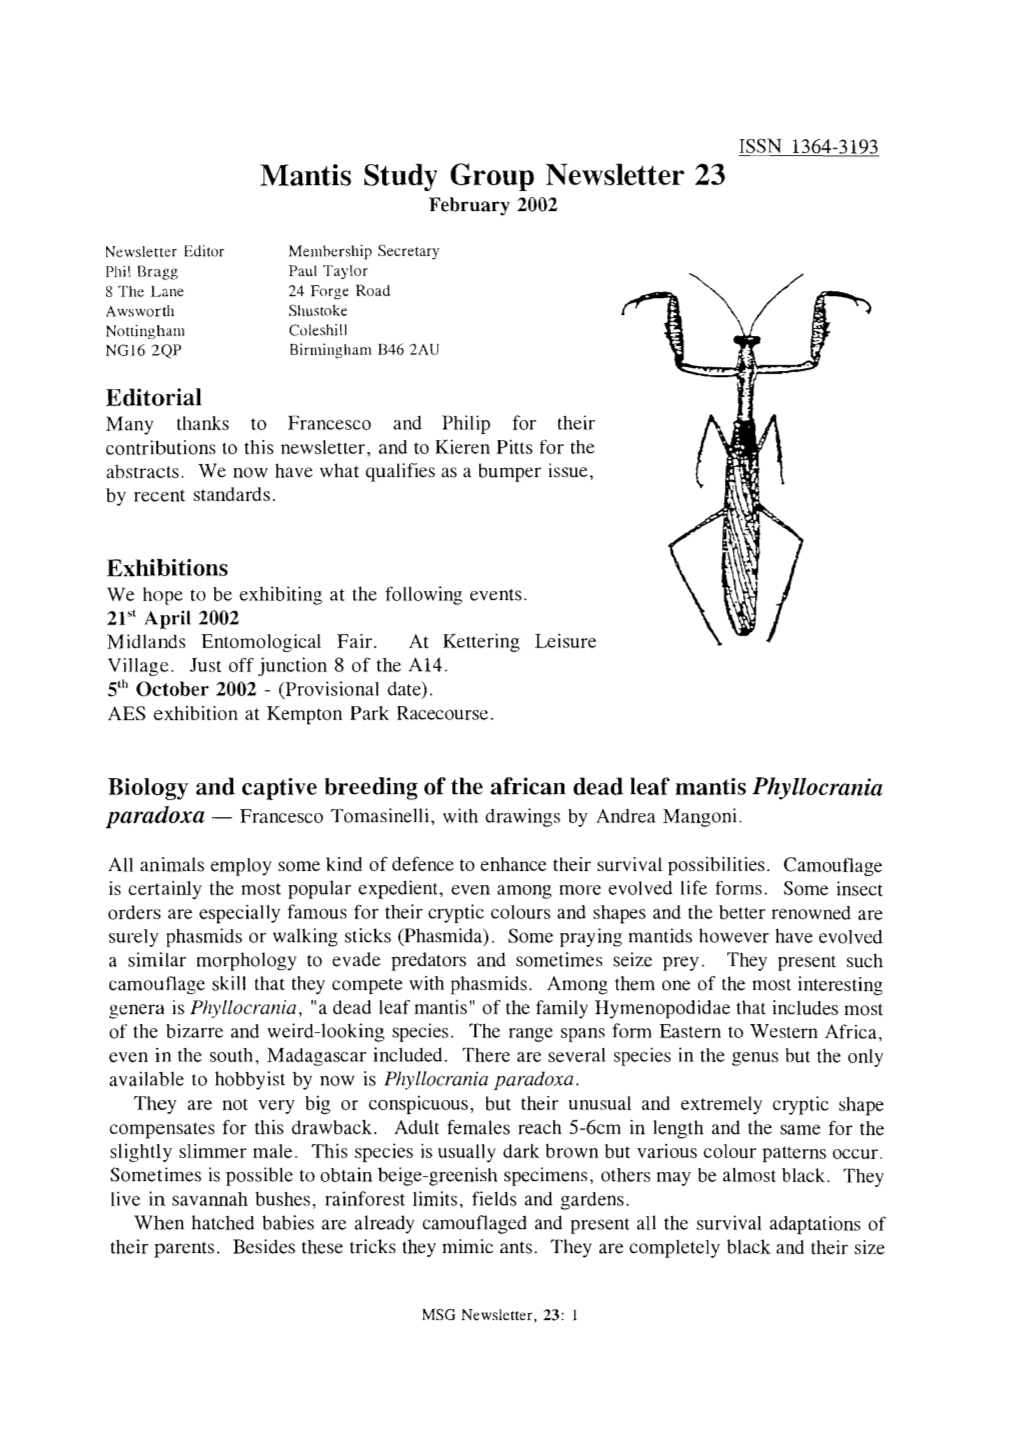 Mantis Study Group Newsletter, 23 (February 2002)